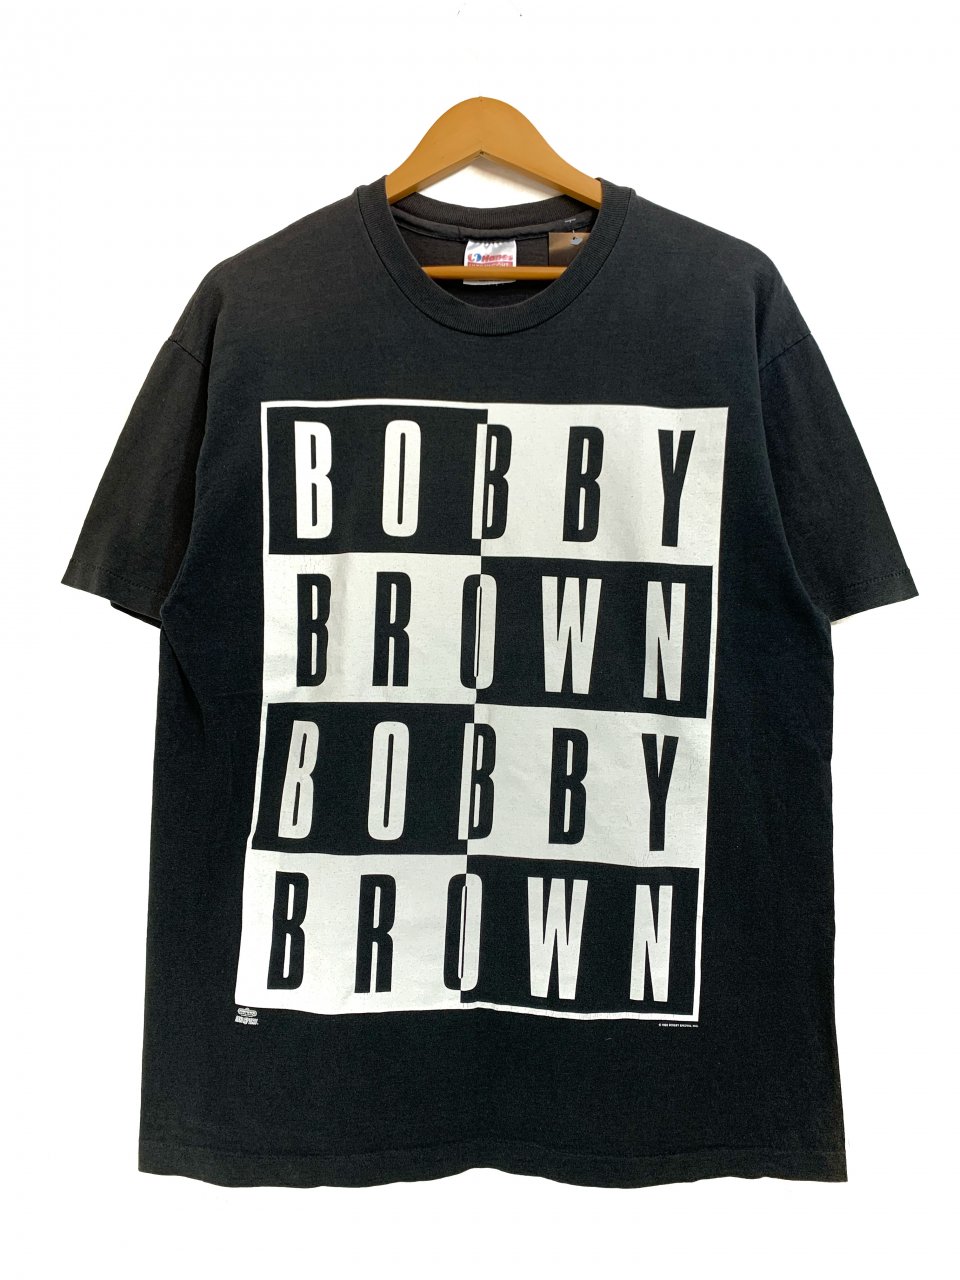 USA製 93年 BOBBY BROWN 